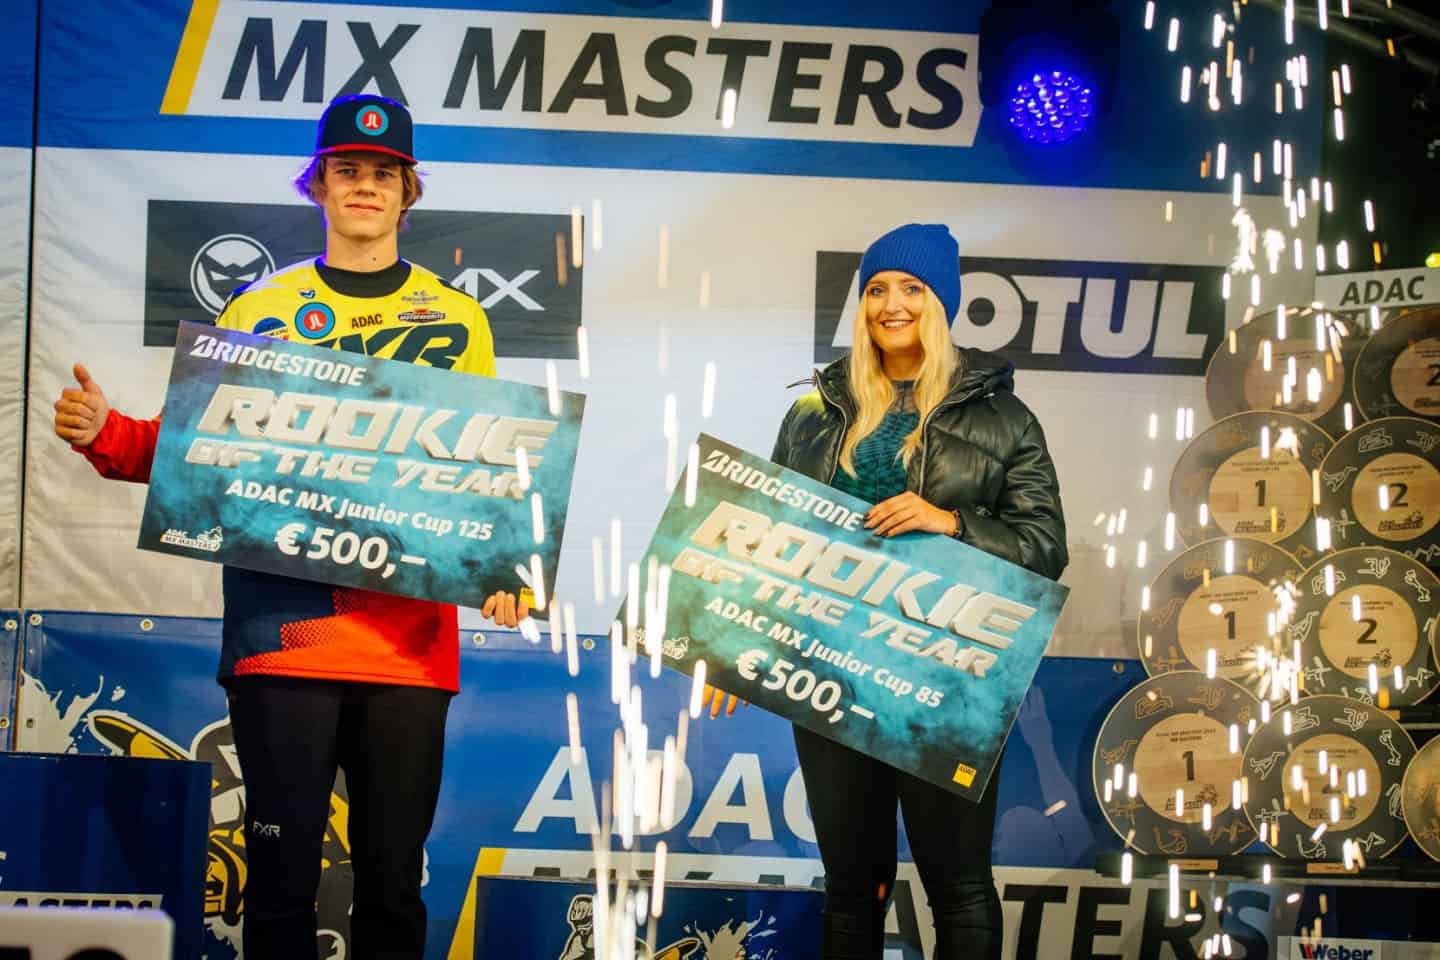 PM ADAC Motorsport - ADAC MX Masters in Fürstlich Drehna